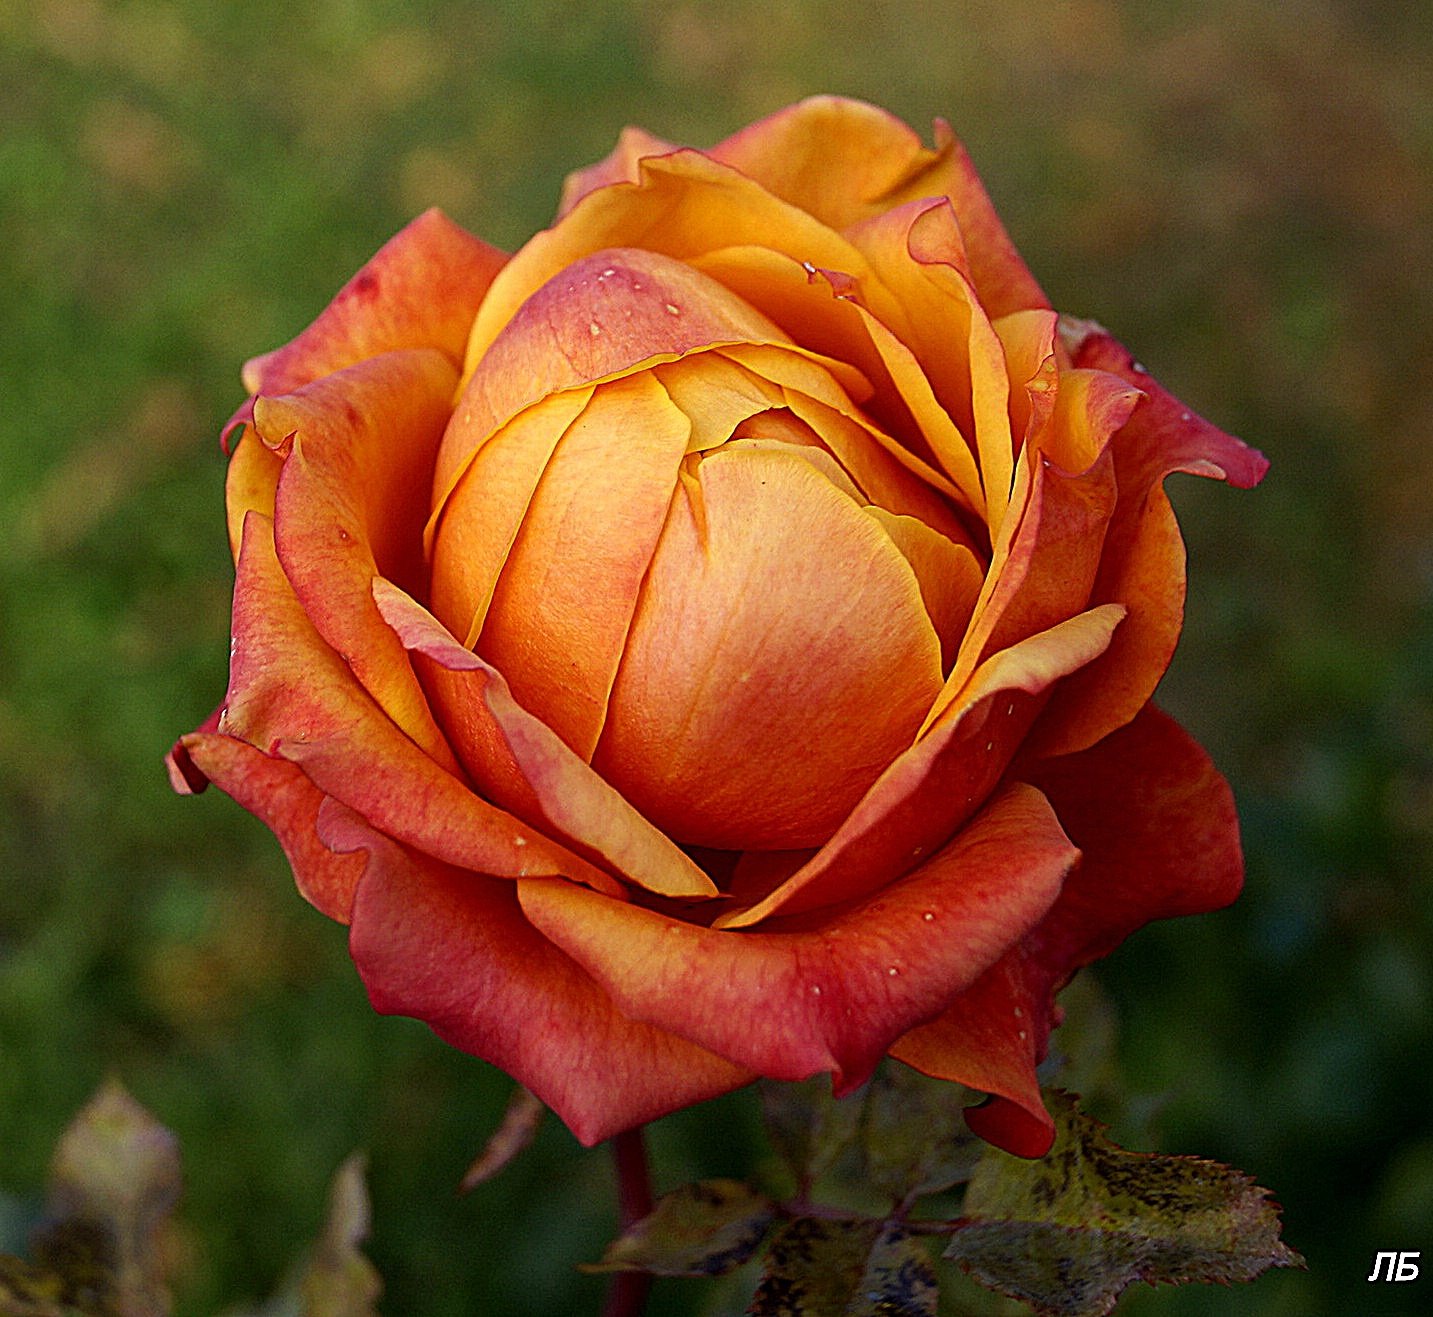 Роза Золотая (60 см.)